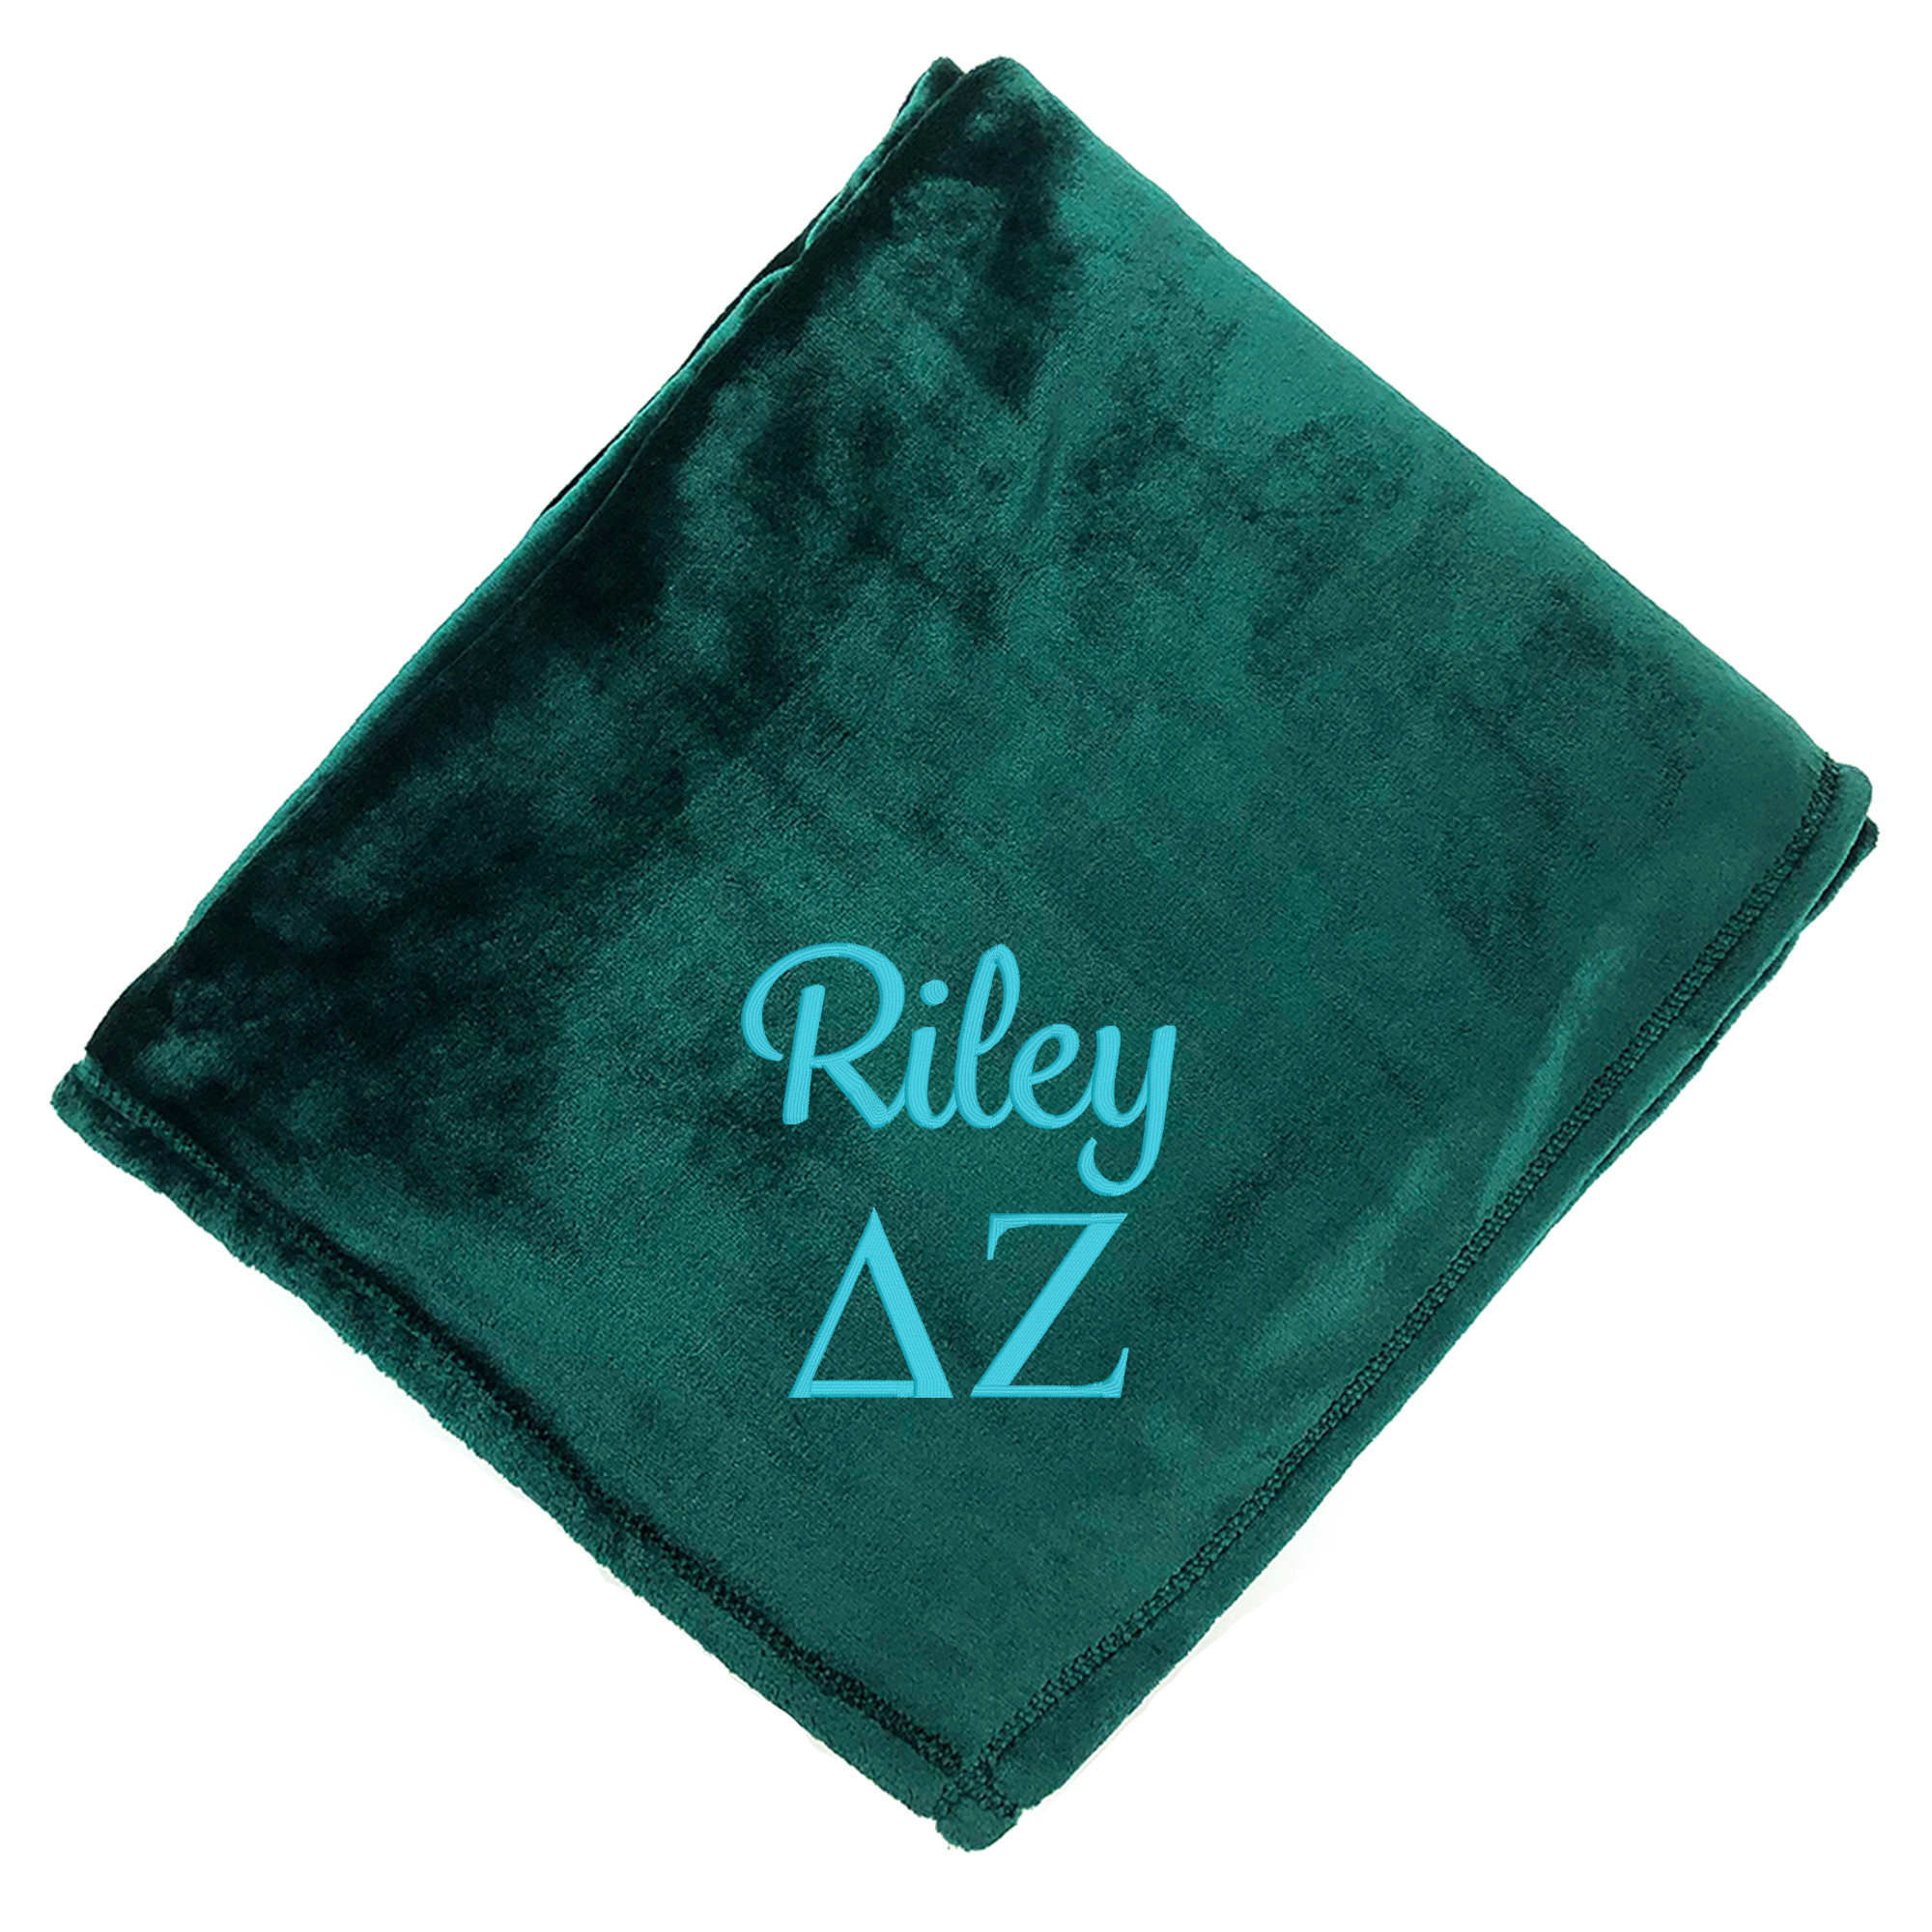 Personalized Delta Zeta Greek Letter Blanket - Go Greek Chic